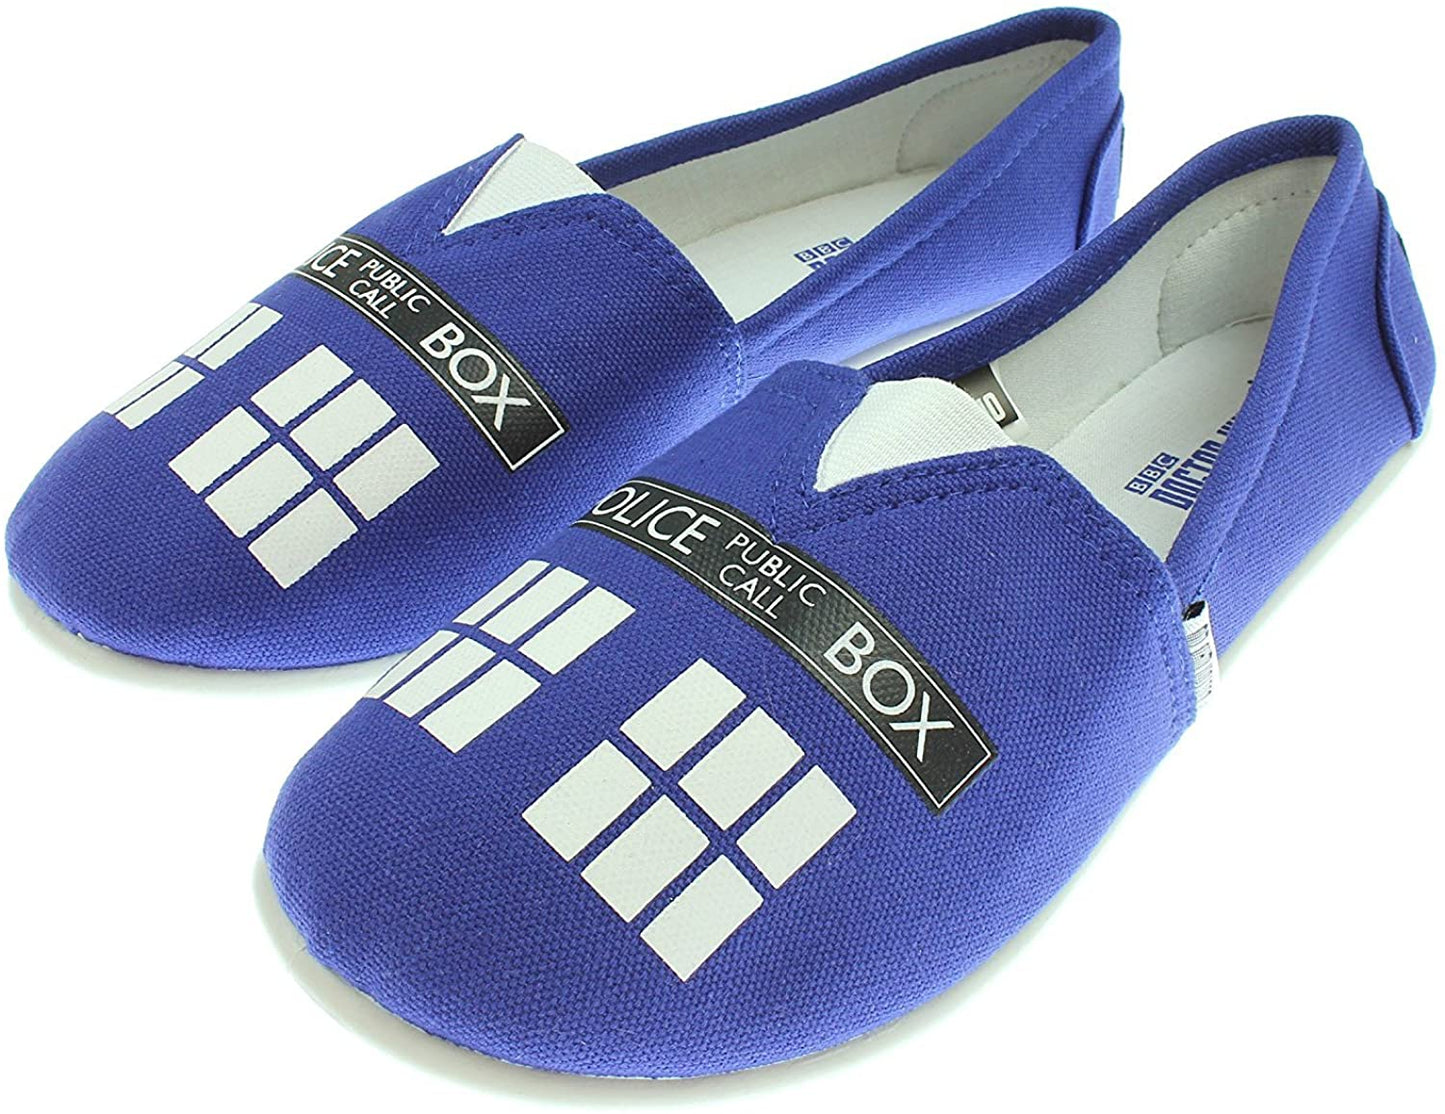 Women's Doctor Who Blue Tardis Slip On Shoes - Bladevip